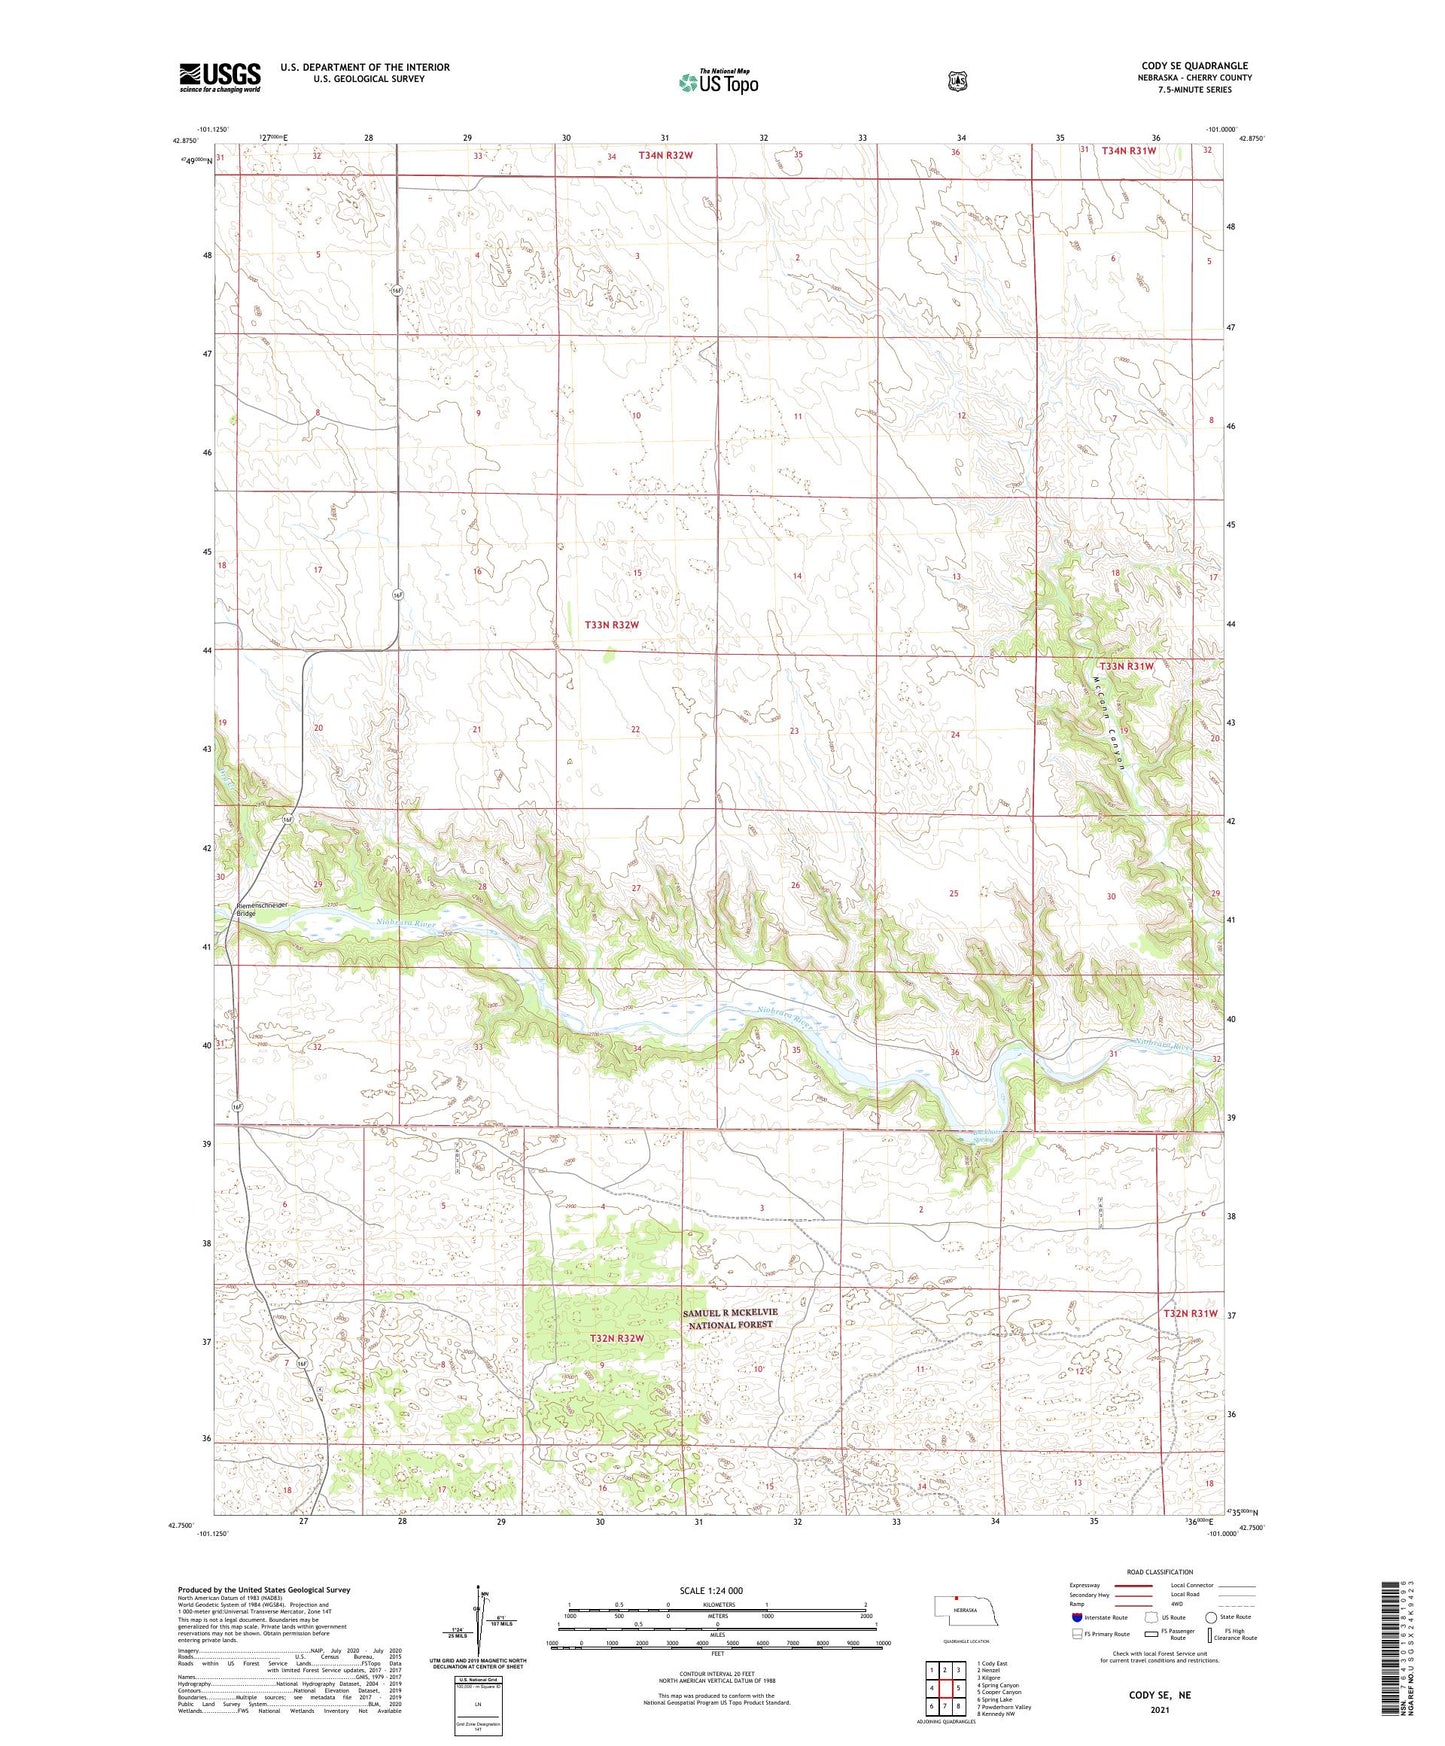 Cody SE Nebraska US Topo Map Image